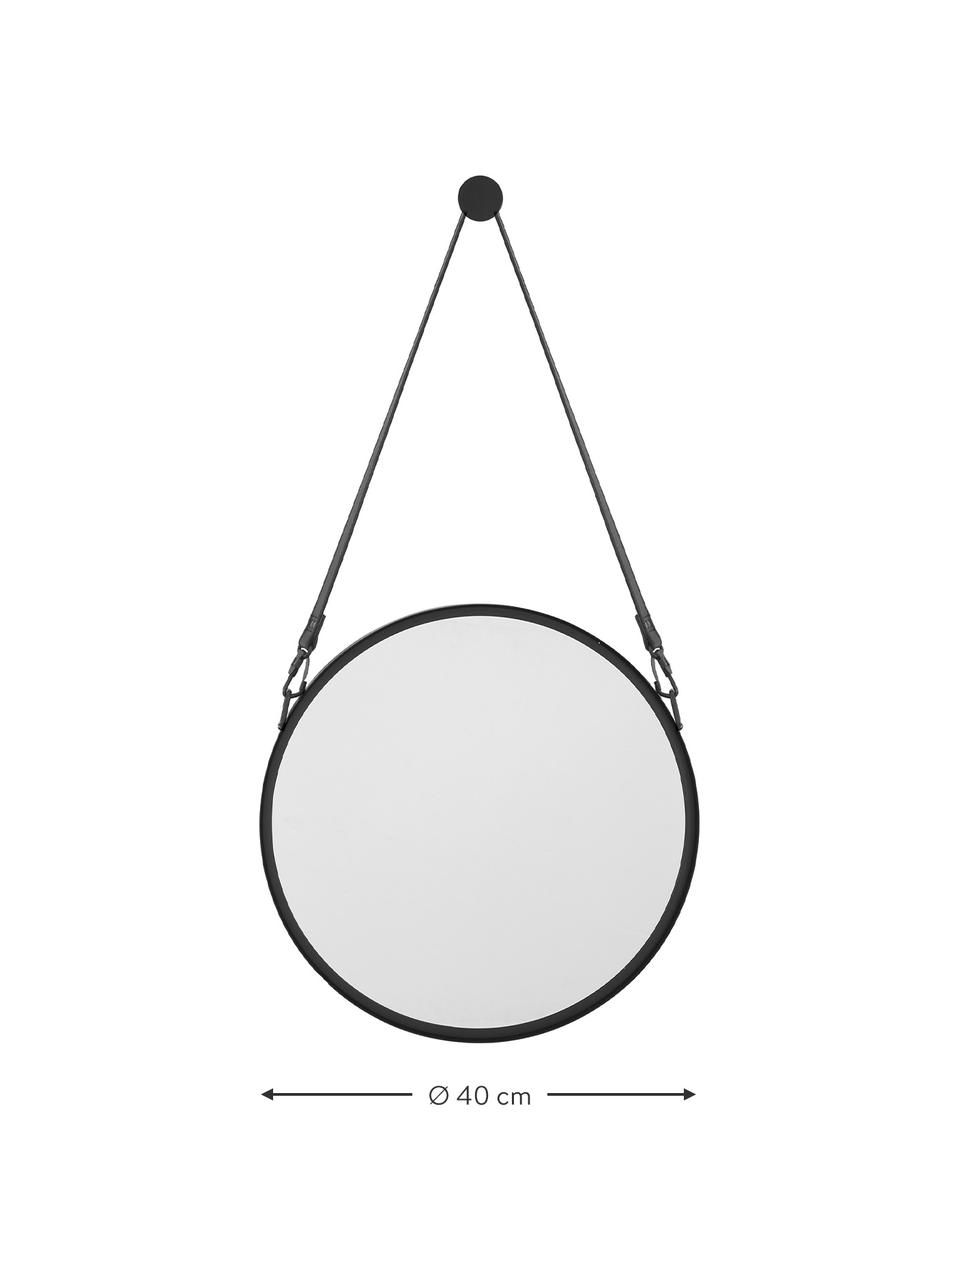 Okrągłe lustro ścienne z metalową ramą i zawieszką Liz, Czarny, S 55 x W 100 cm